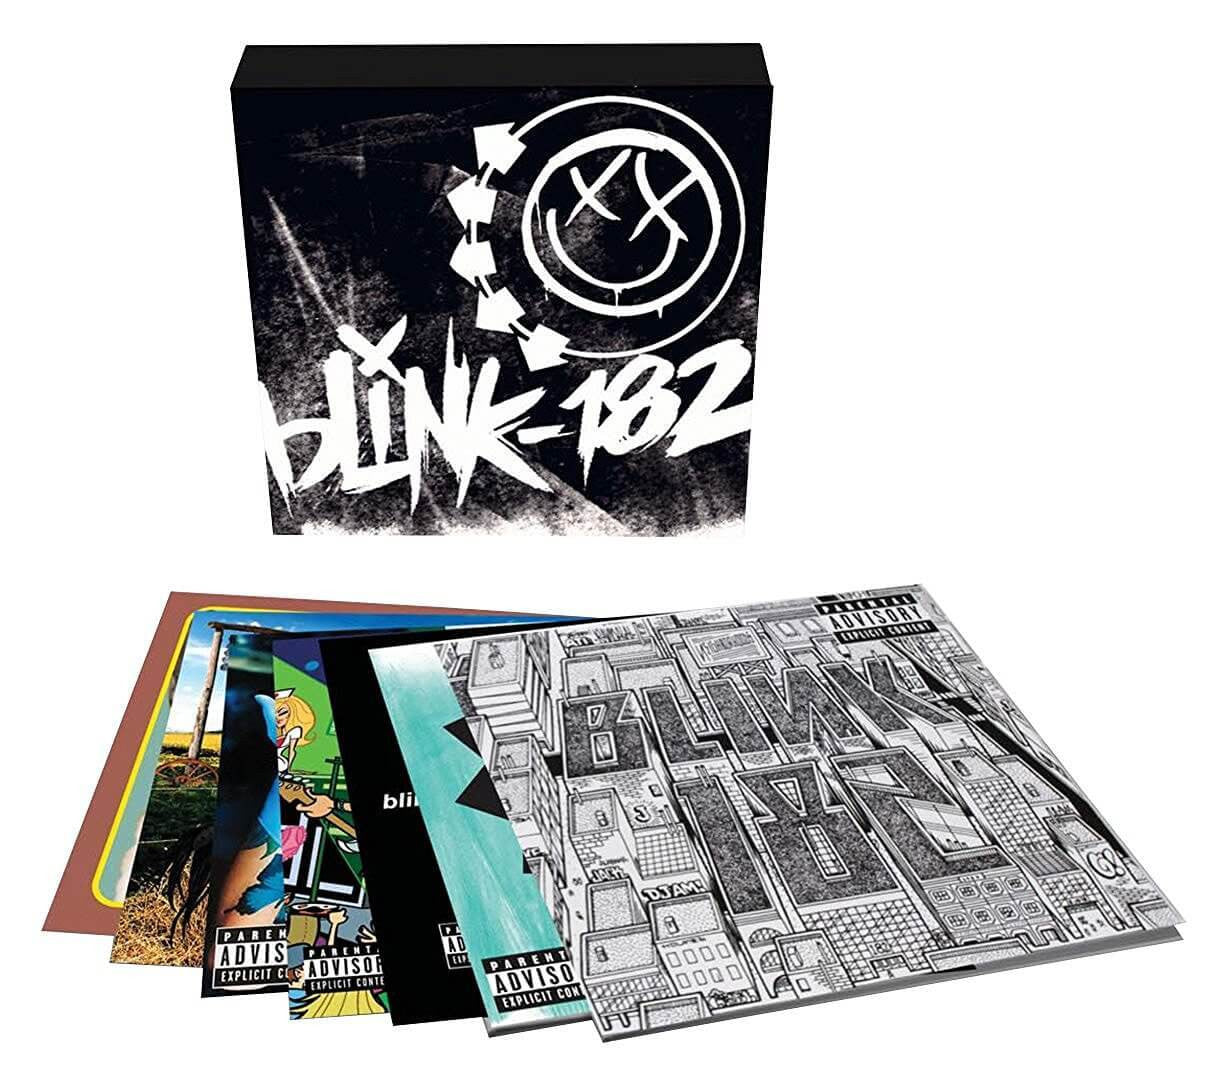 Blink-182 - The Box Set - New Vinyl Record 2016 Geffen / Universal 7 Album, 10-LP 180gram Vinyl Boxset - Punk Rock / Pop-Punk